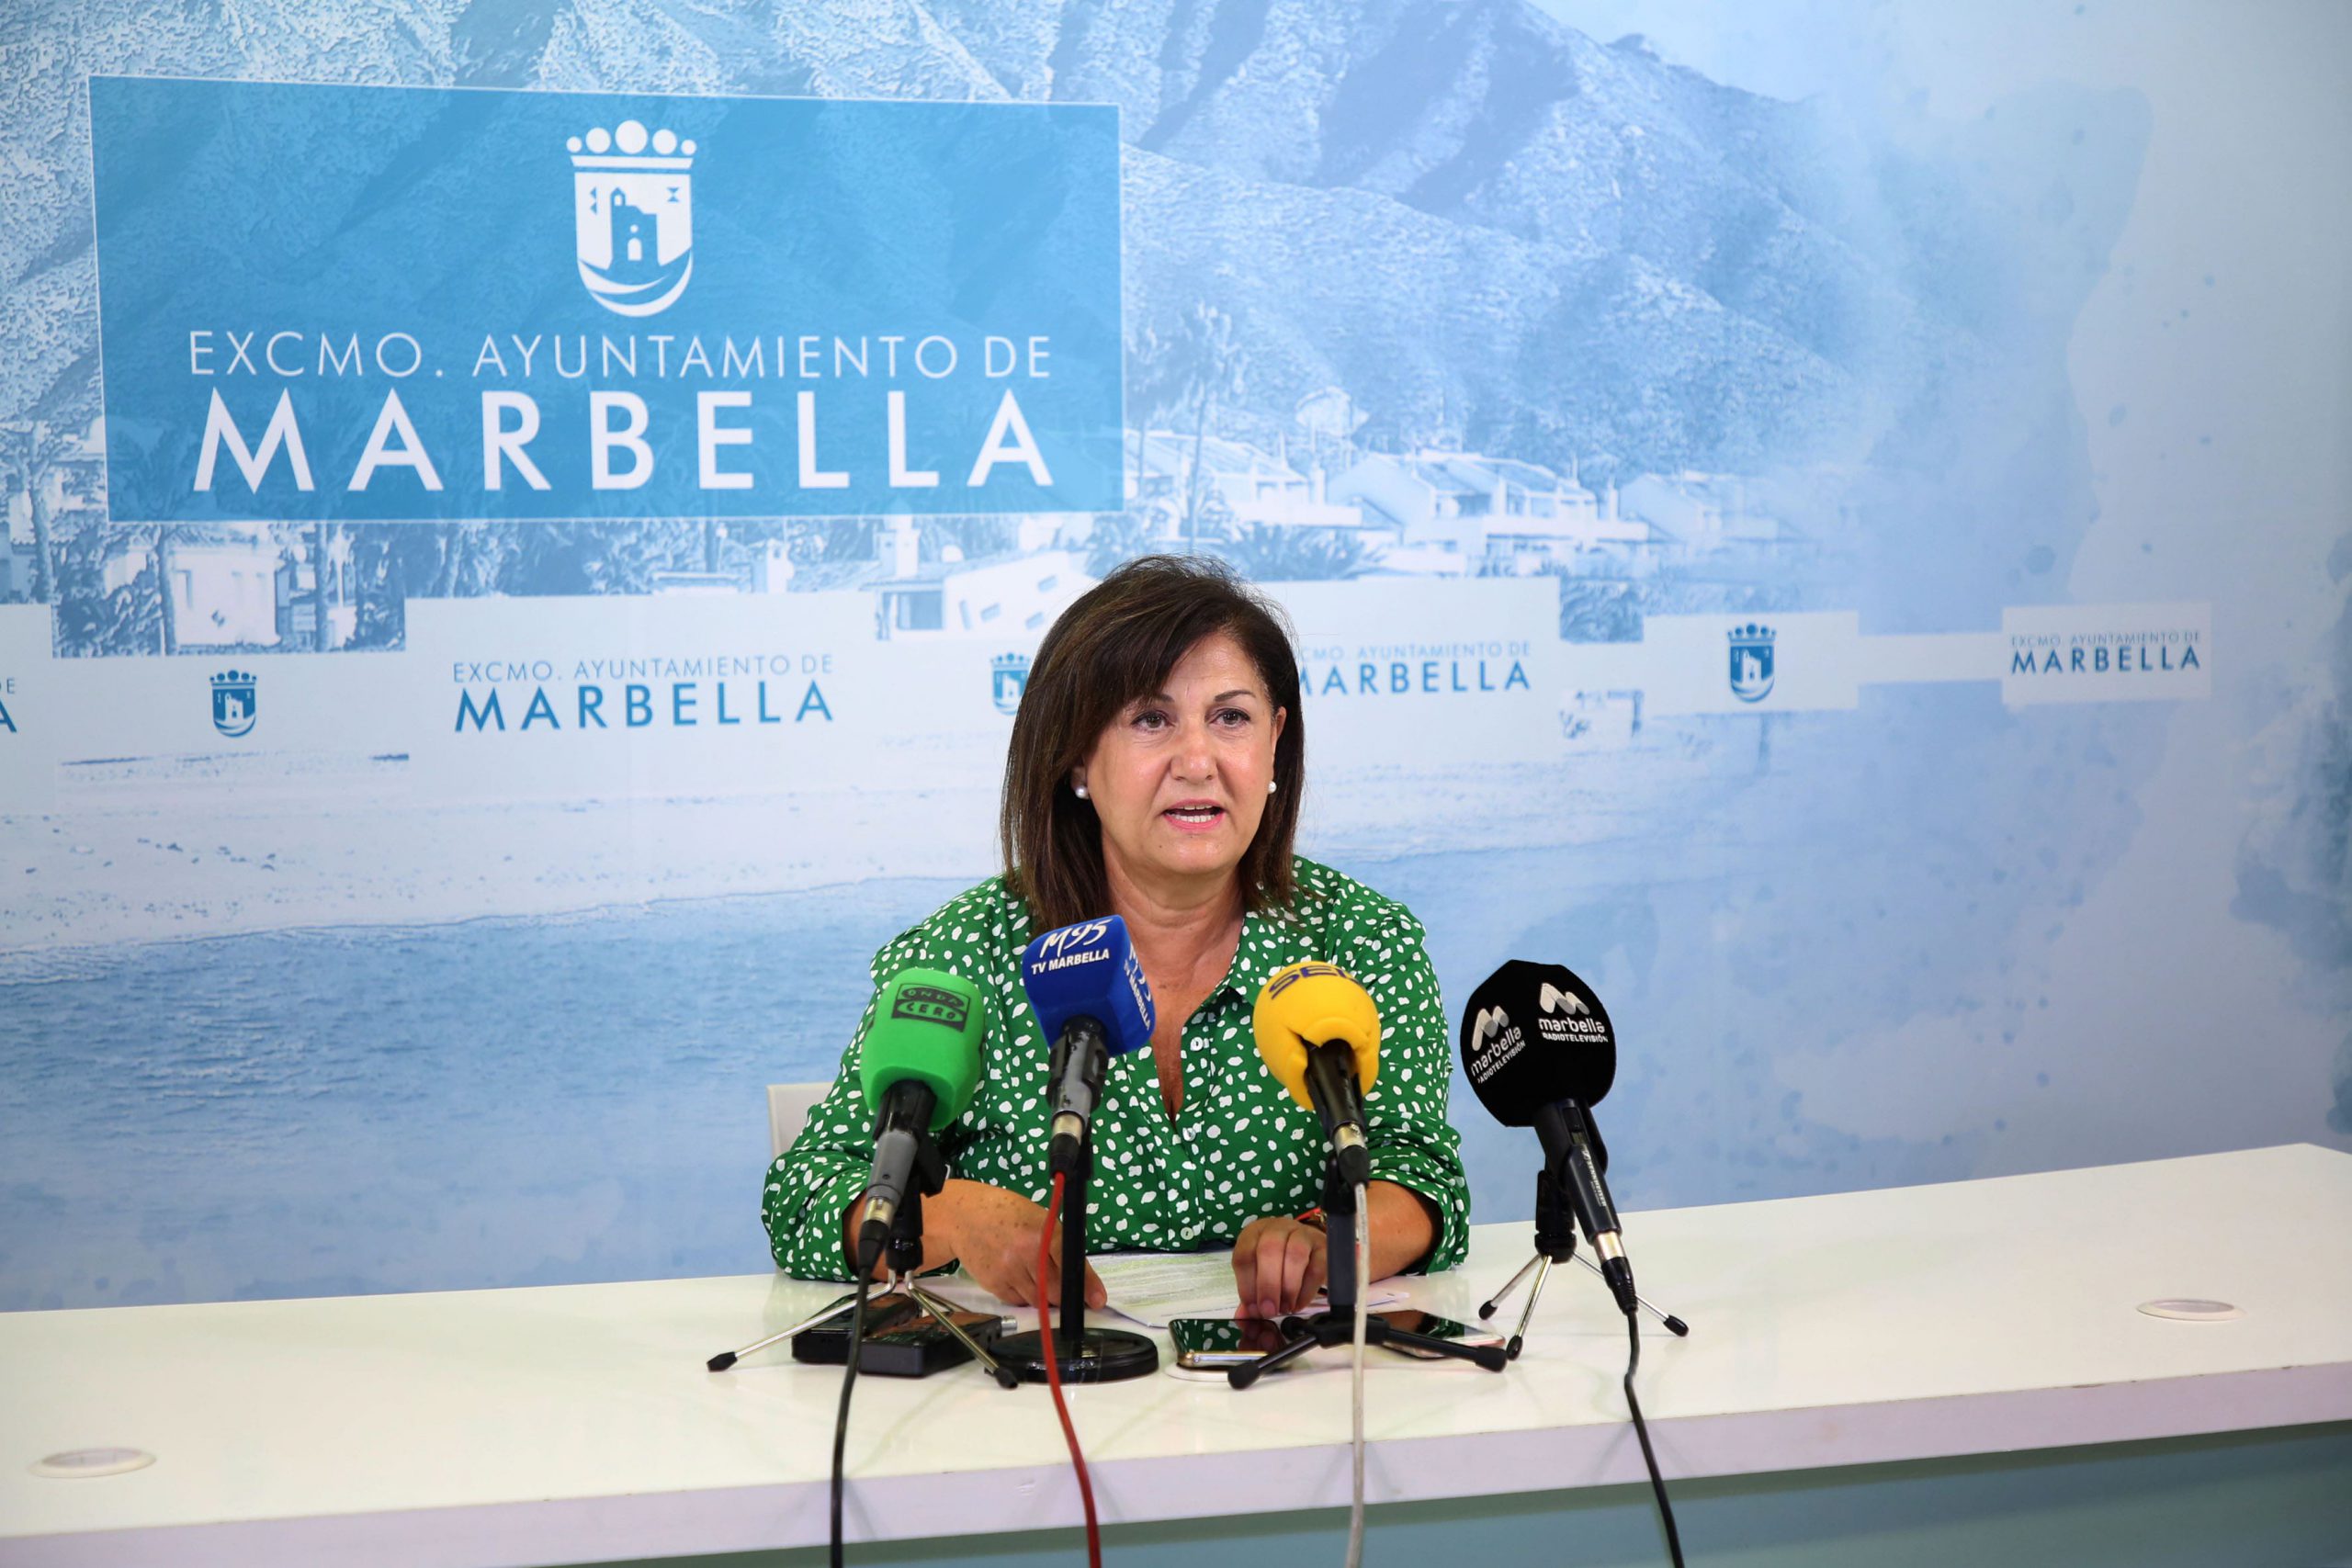 El Festival Internacional de Música de Marbella se celebrará del 1 al 15 de septiembre